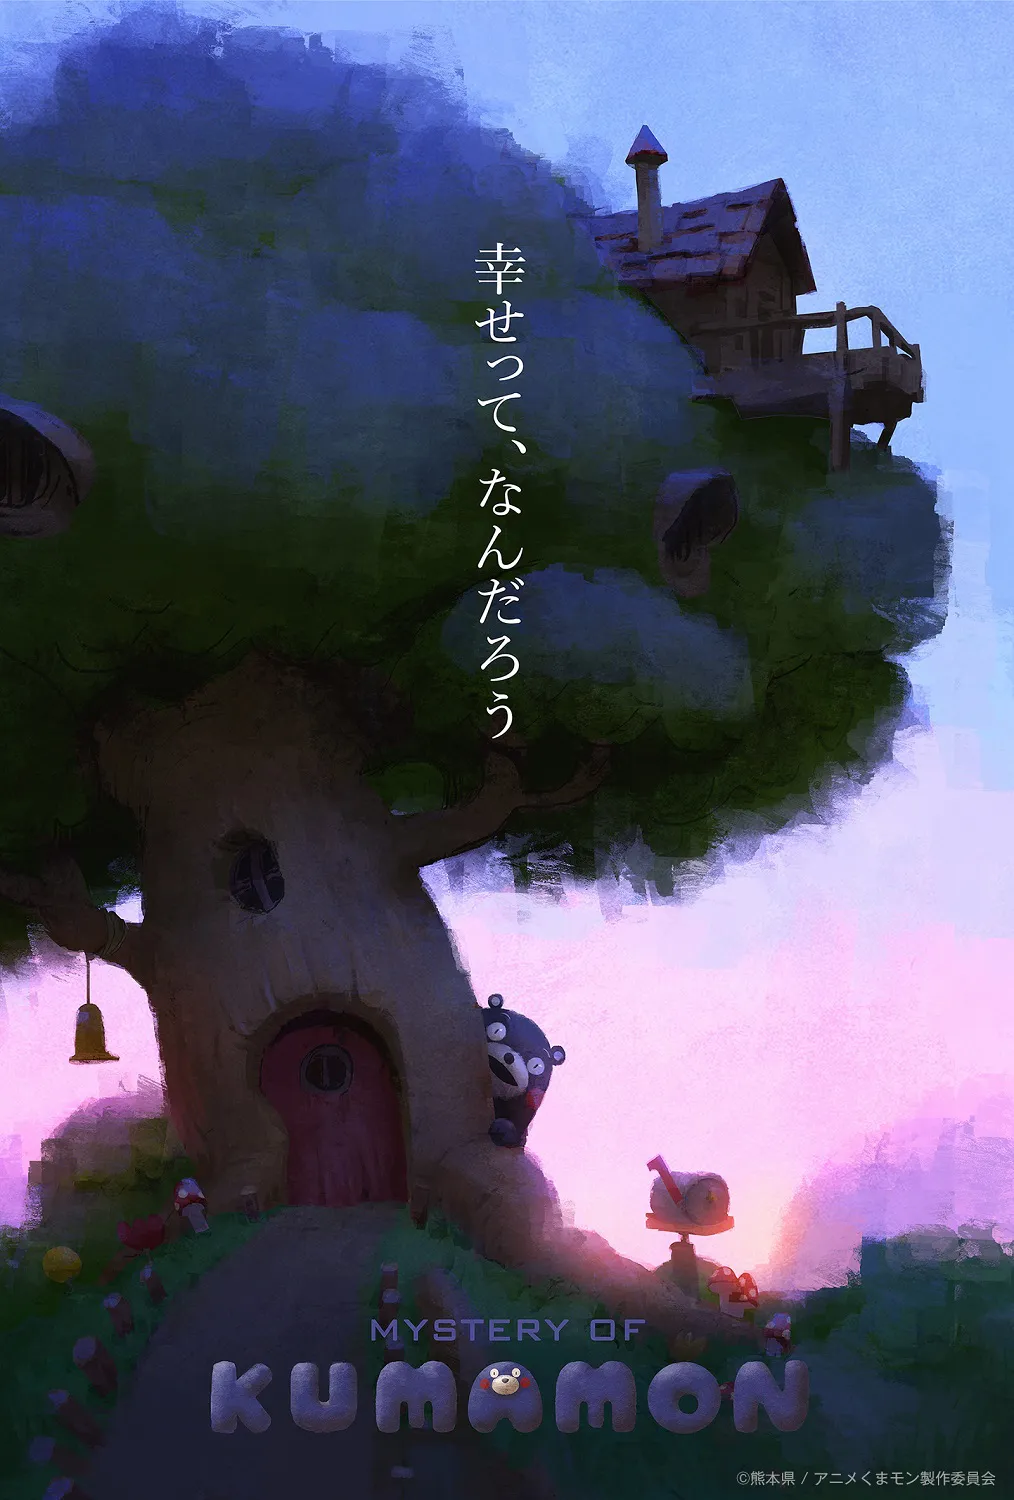 くまモンを主人公にしたアニメ「MYSTERY OF KUMAMON」のキービジュアル